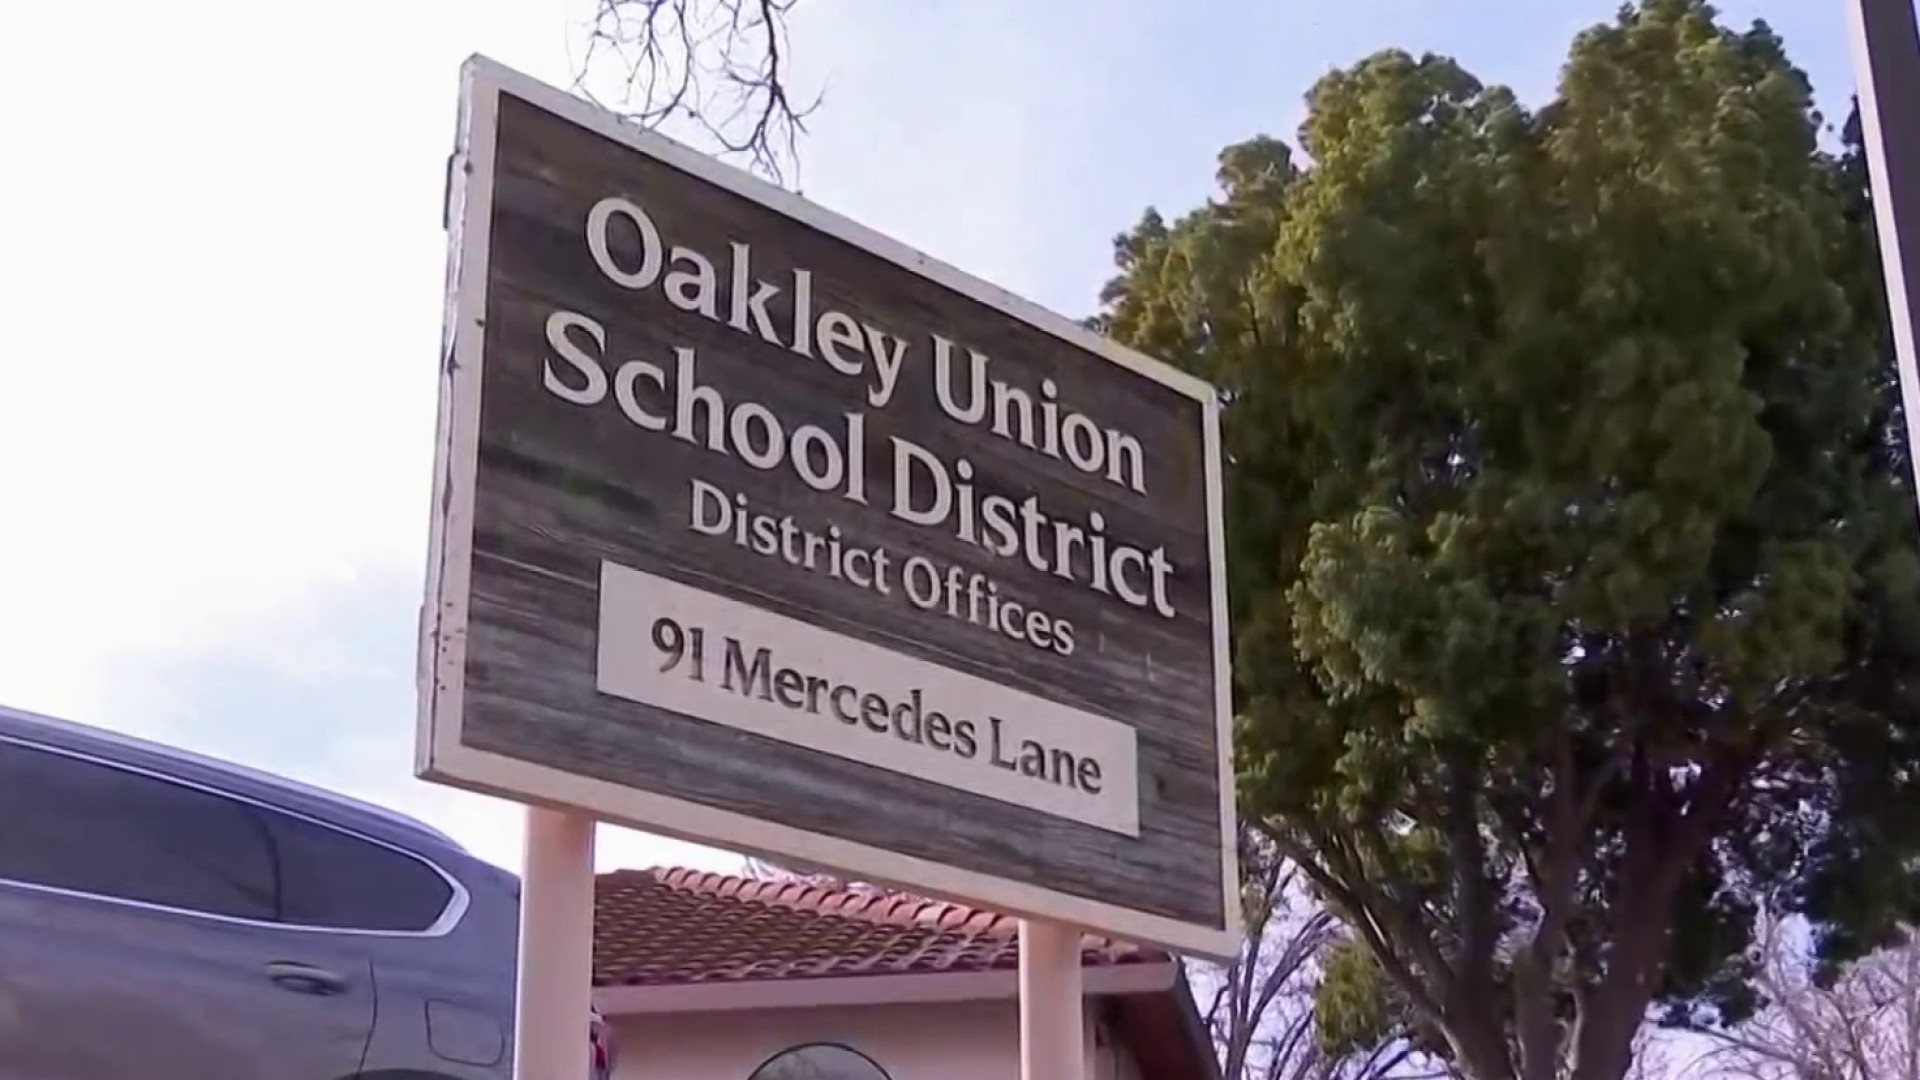 oakley ca school district